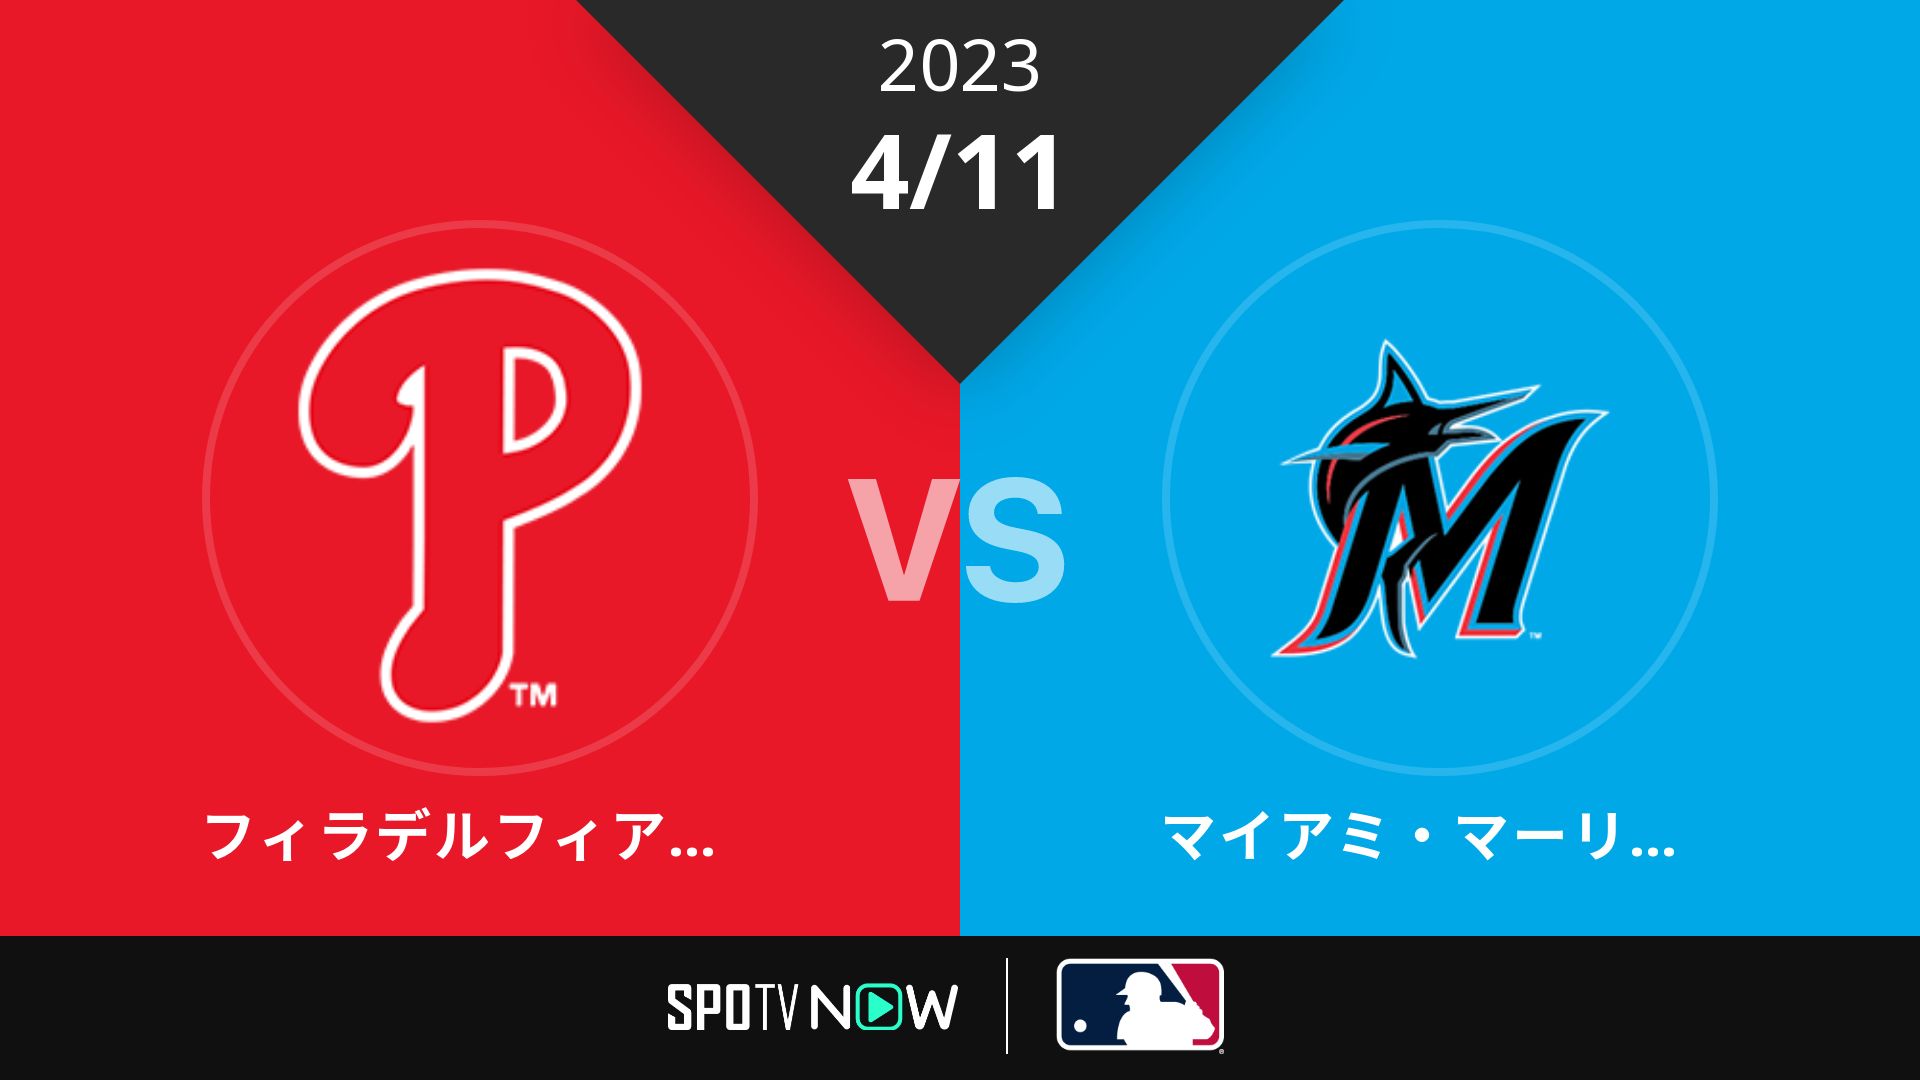 2023/4/11 フィリーズ vs マーリンズ [MLB]